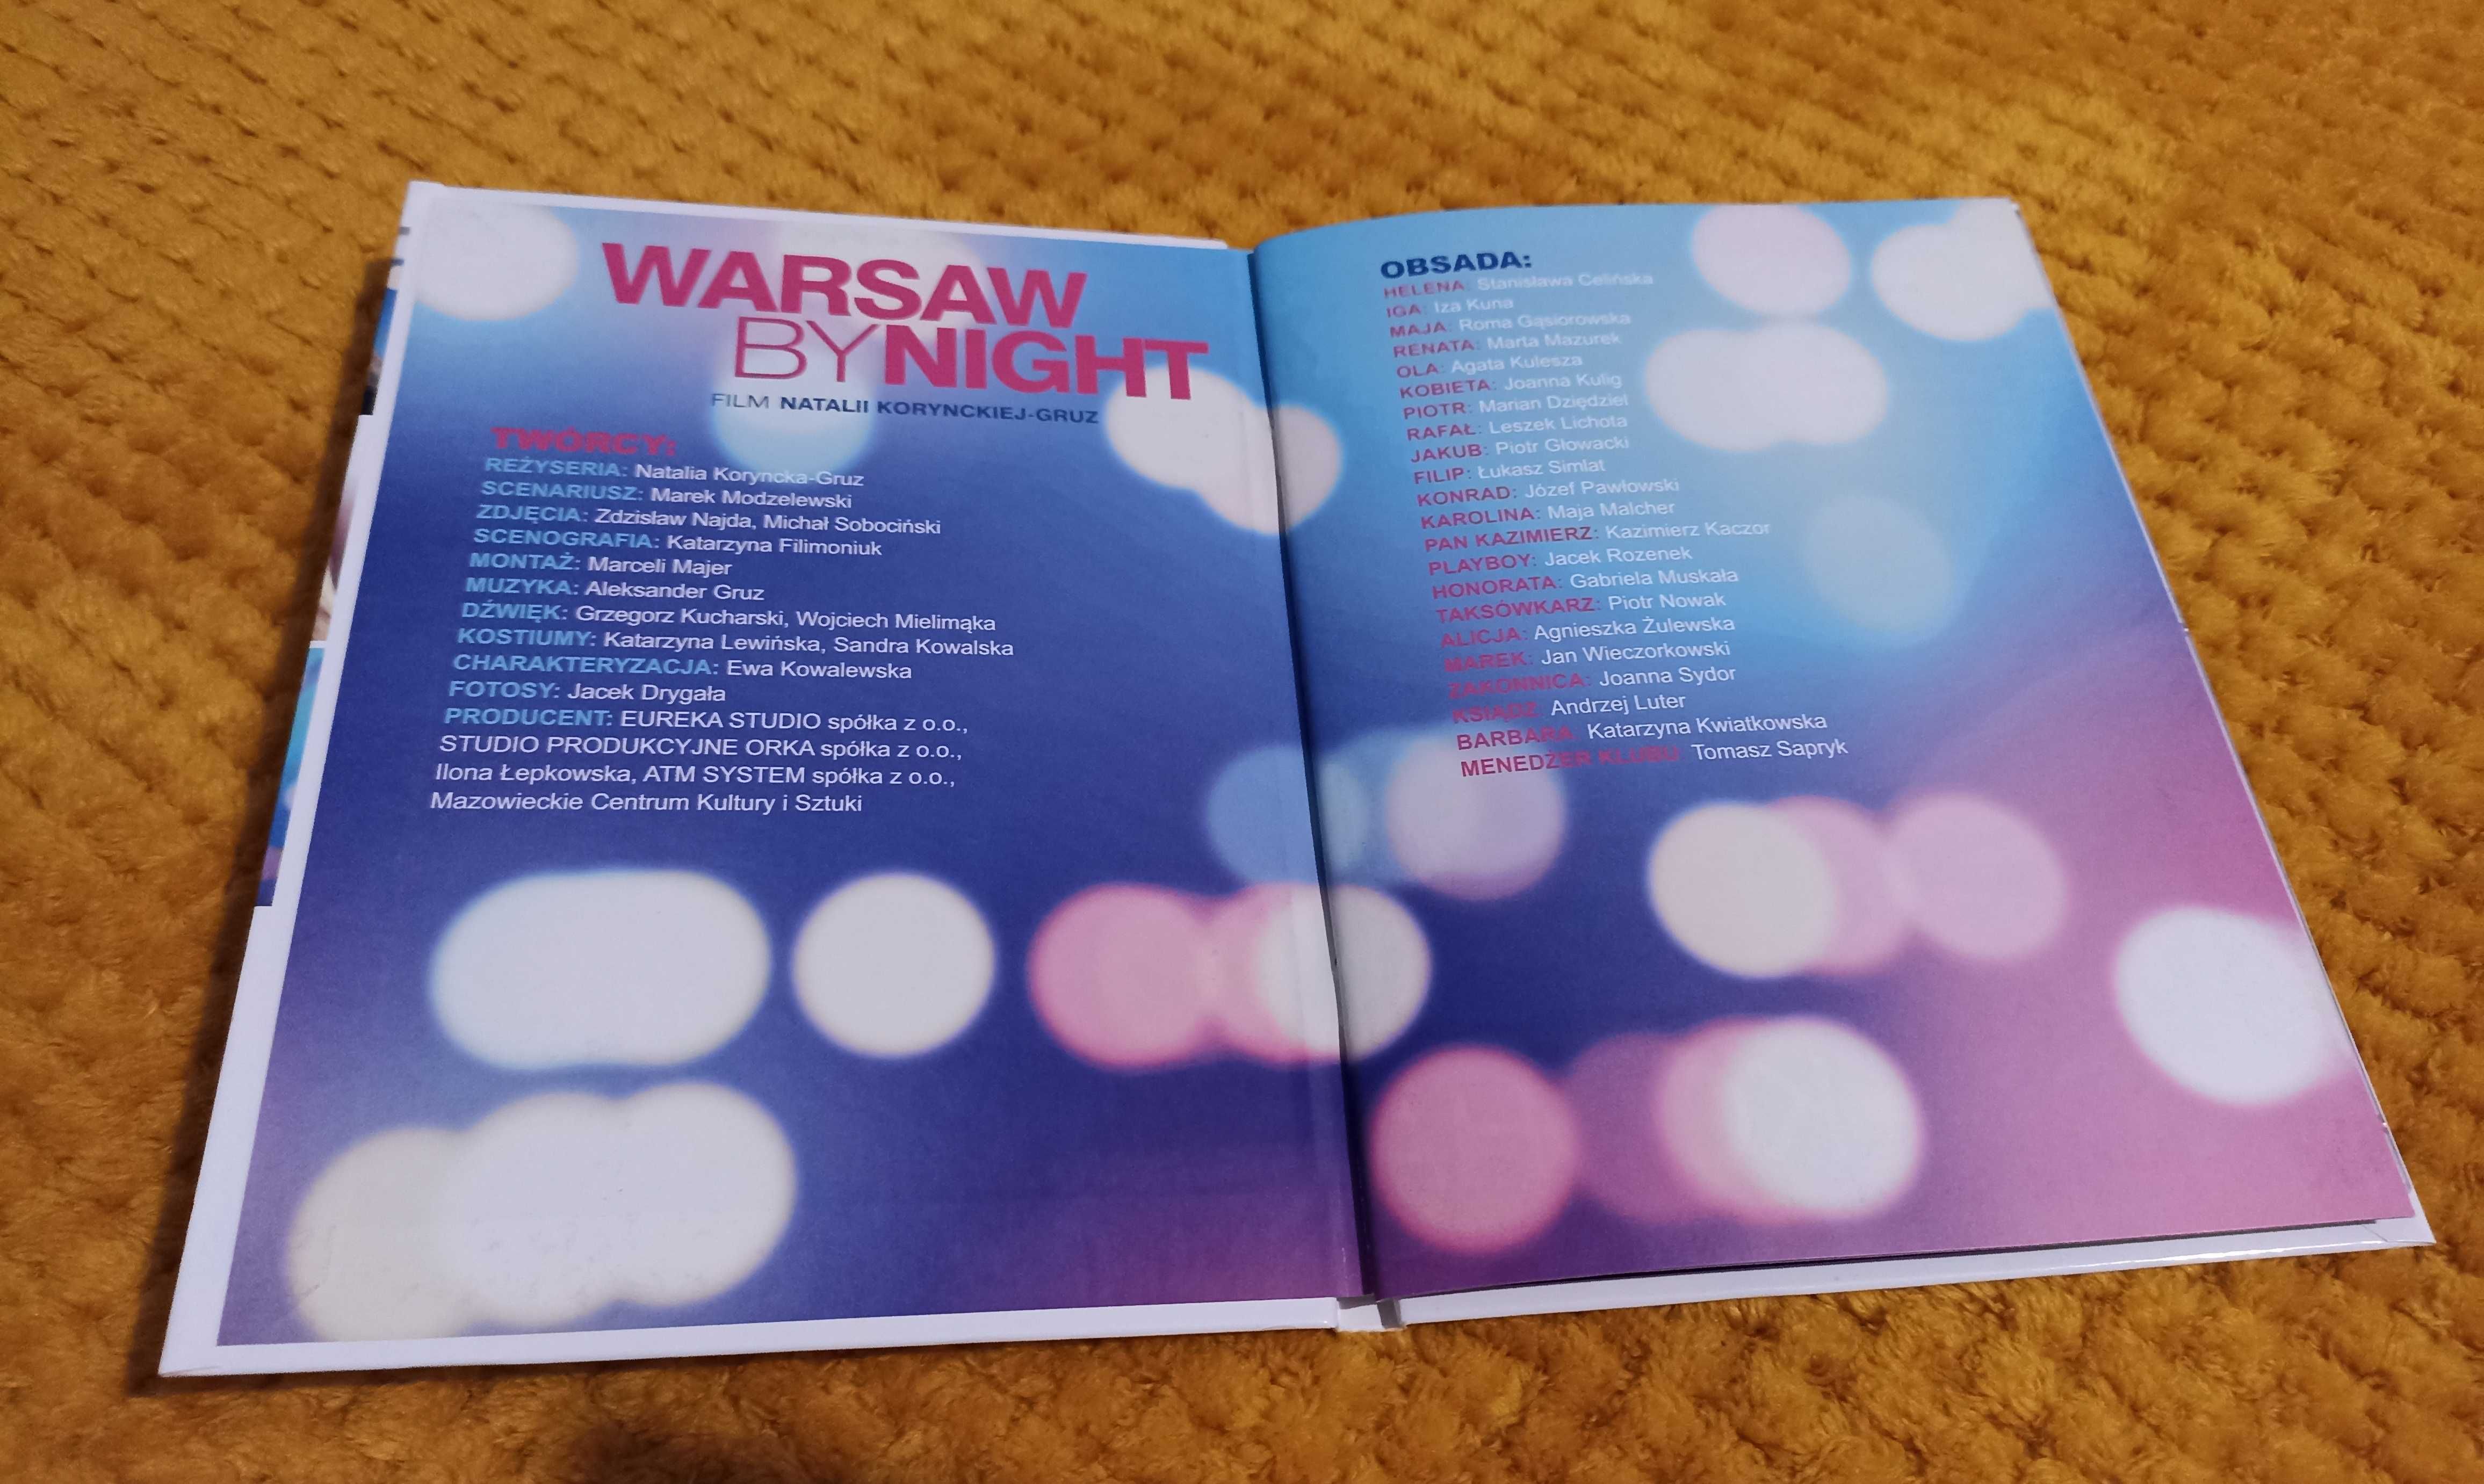 Płyta DVD z filmem "Warsaw by night" Natalii Korynckiej-Gruz